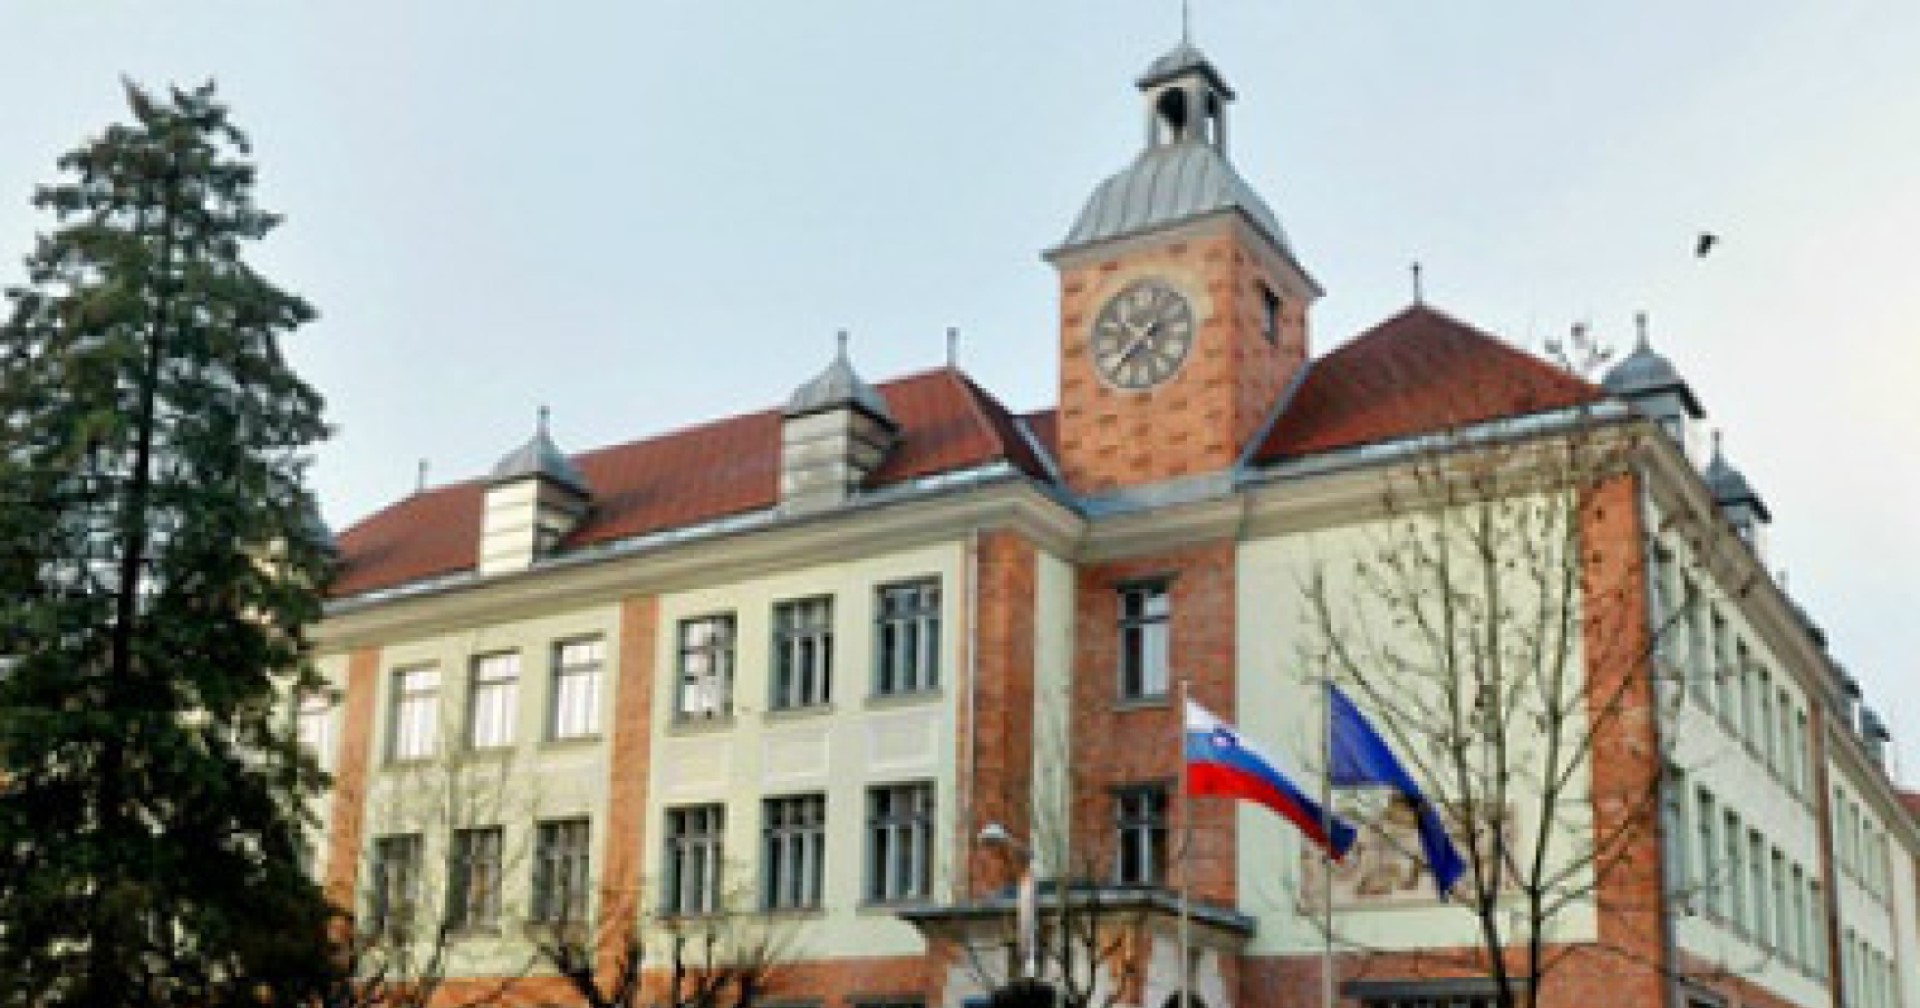 ผู้เชี่ยวชาญเชื่อรัฐบาลต่างประเทศอยู่เบื้องหลังการแฮกกระทรวงต่างประเทศสโลวีเนีย